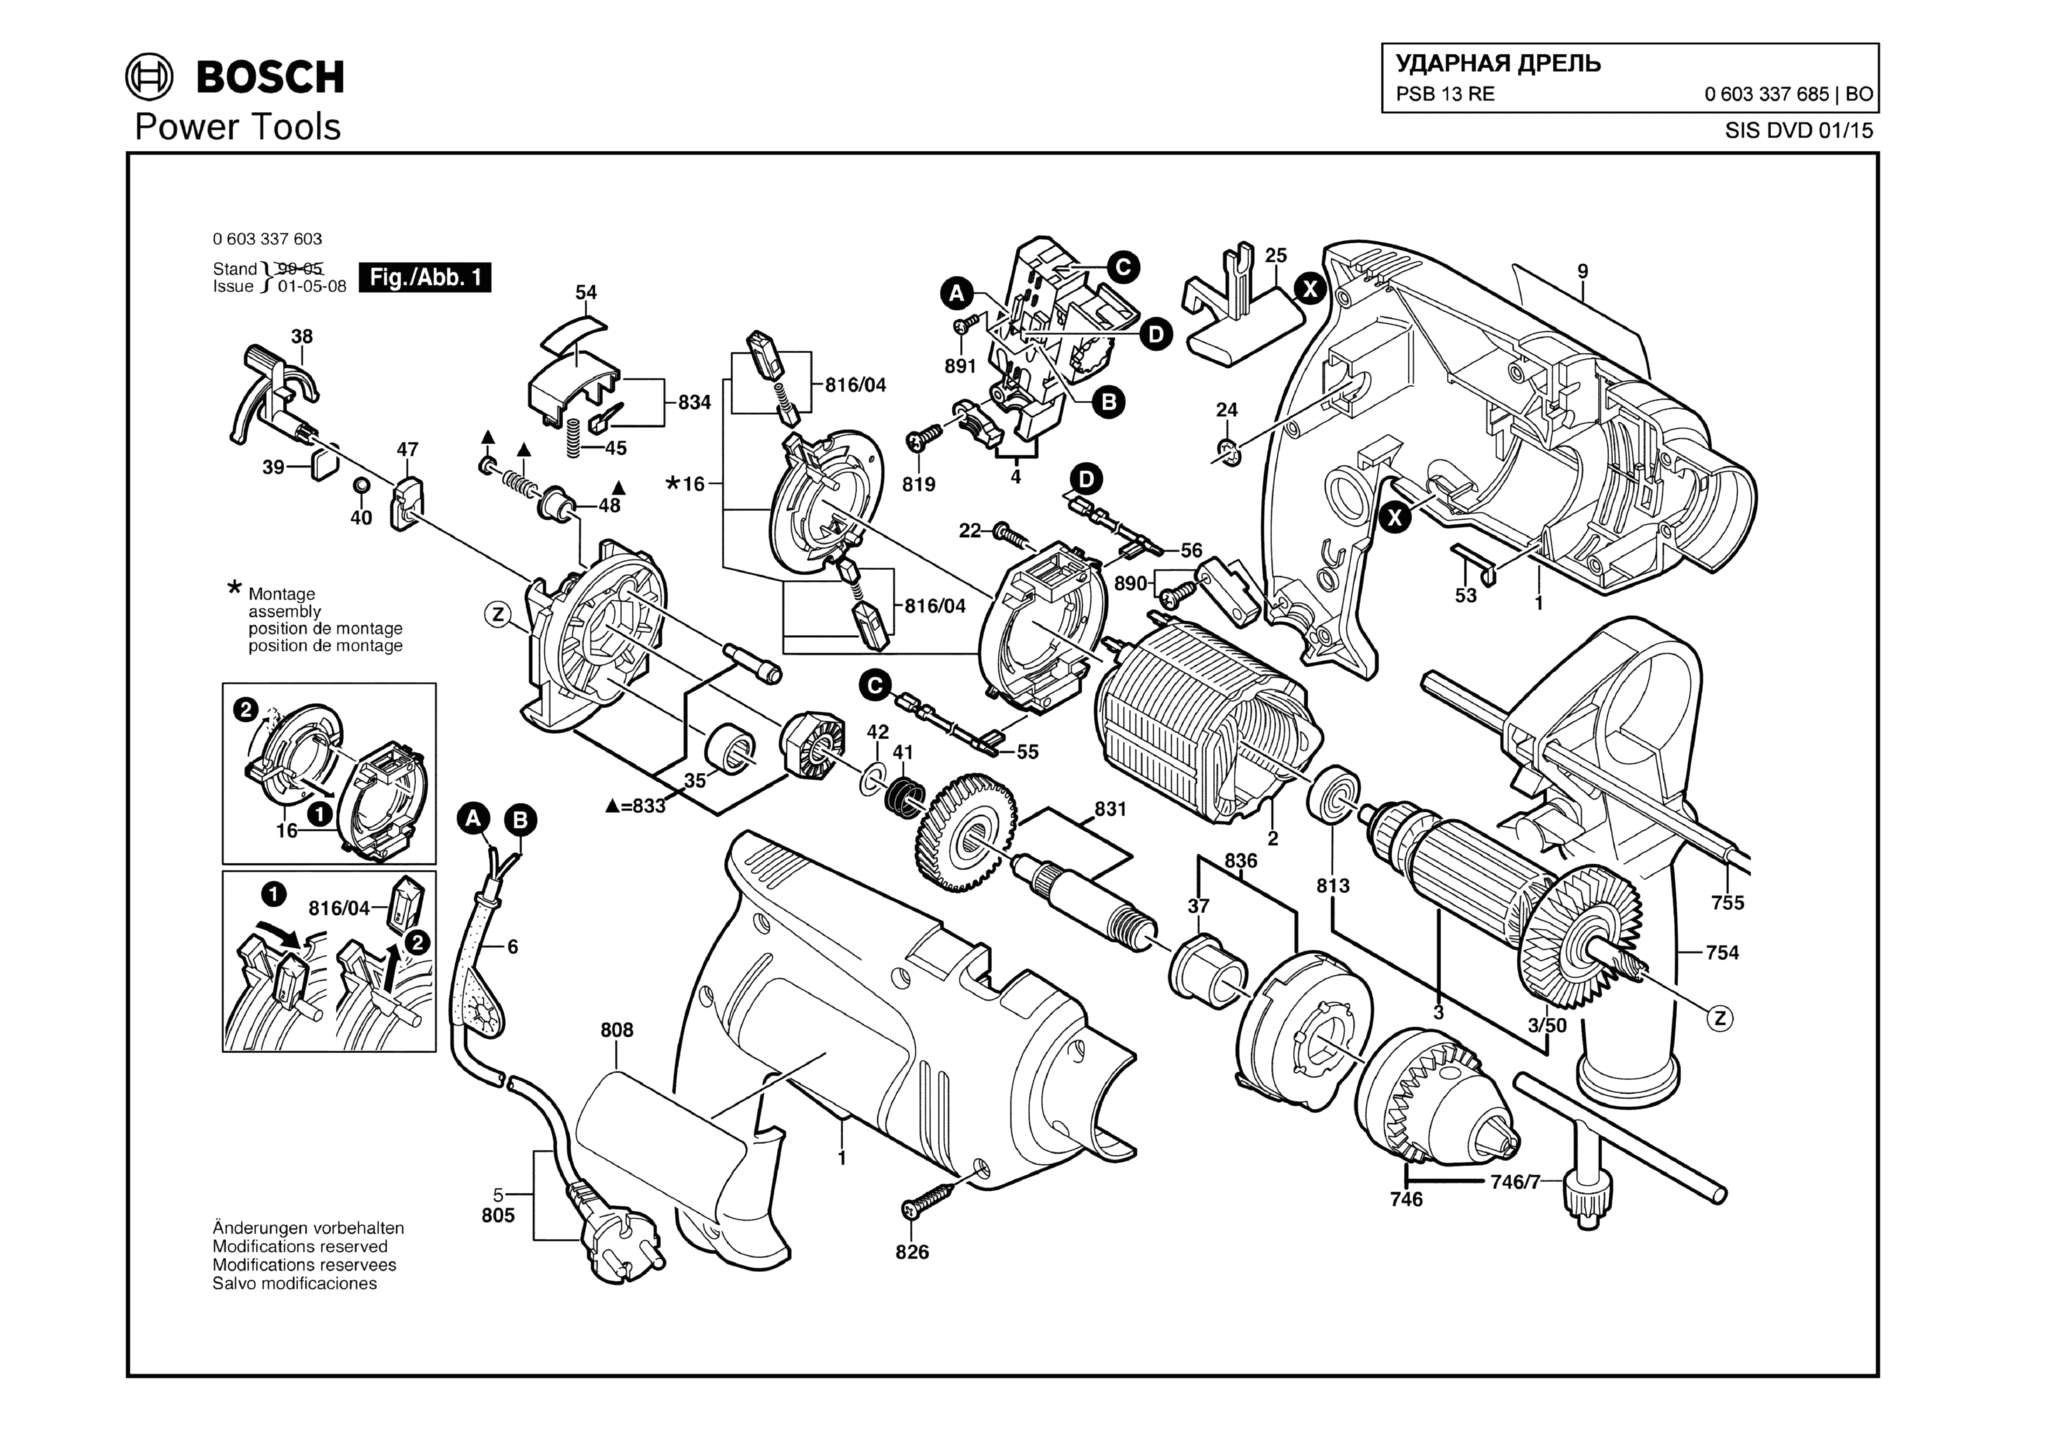 Запчасти, схема и деталировка Bosch PSB 13 RE (ТИП 0603337685)